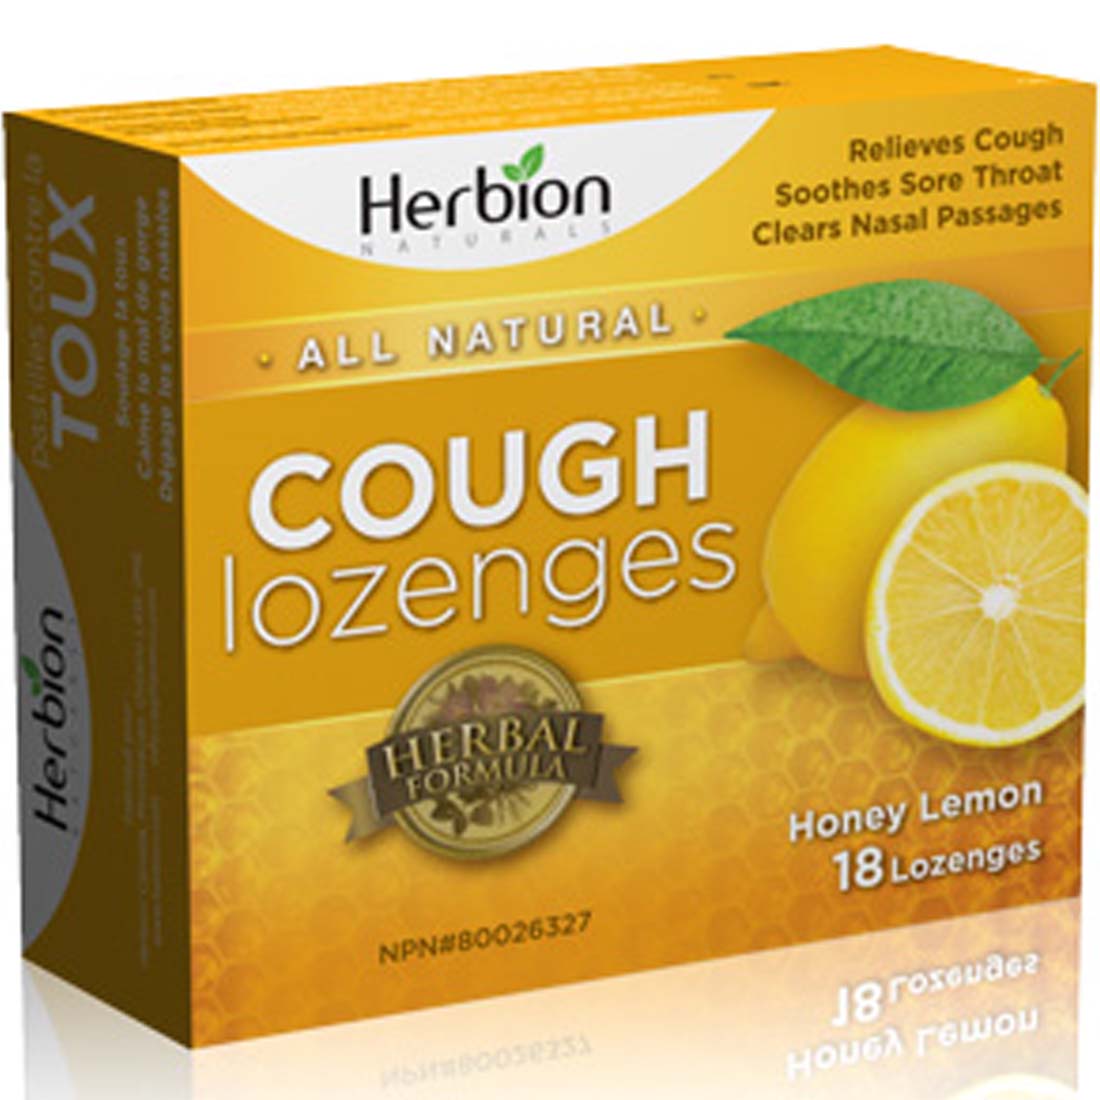 Herbion Cough Lozenges